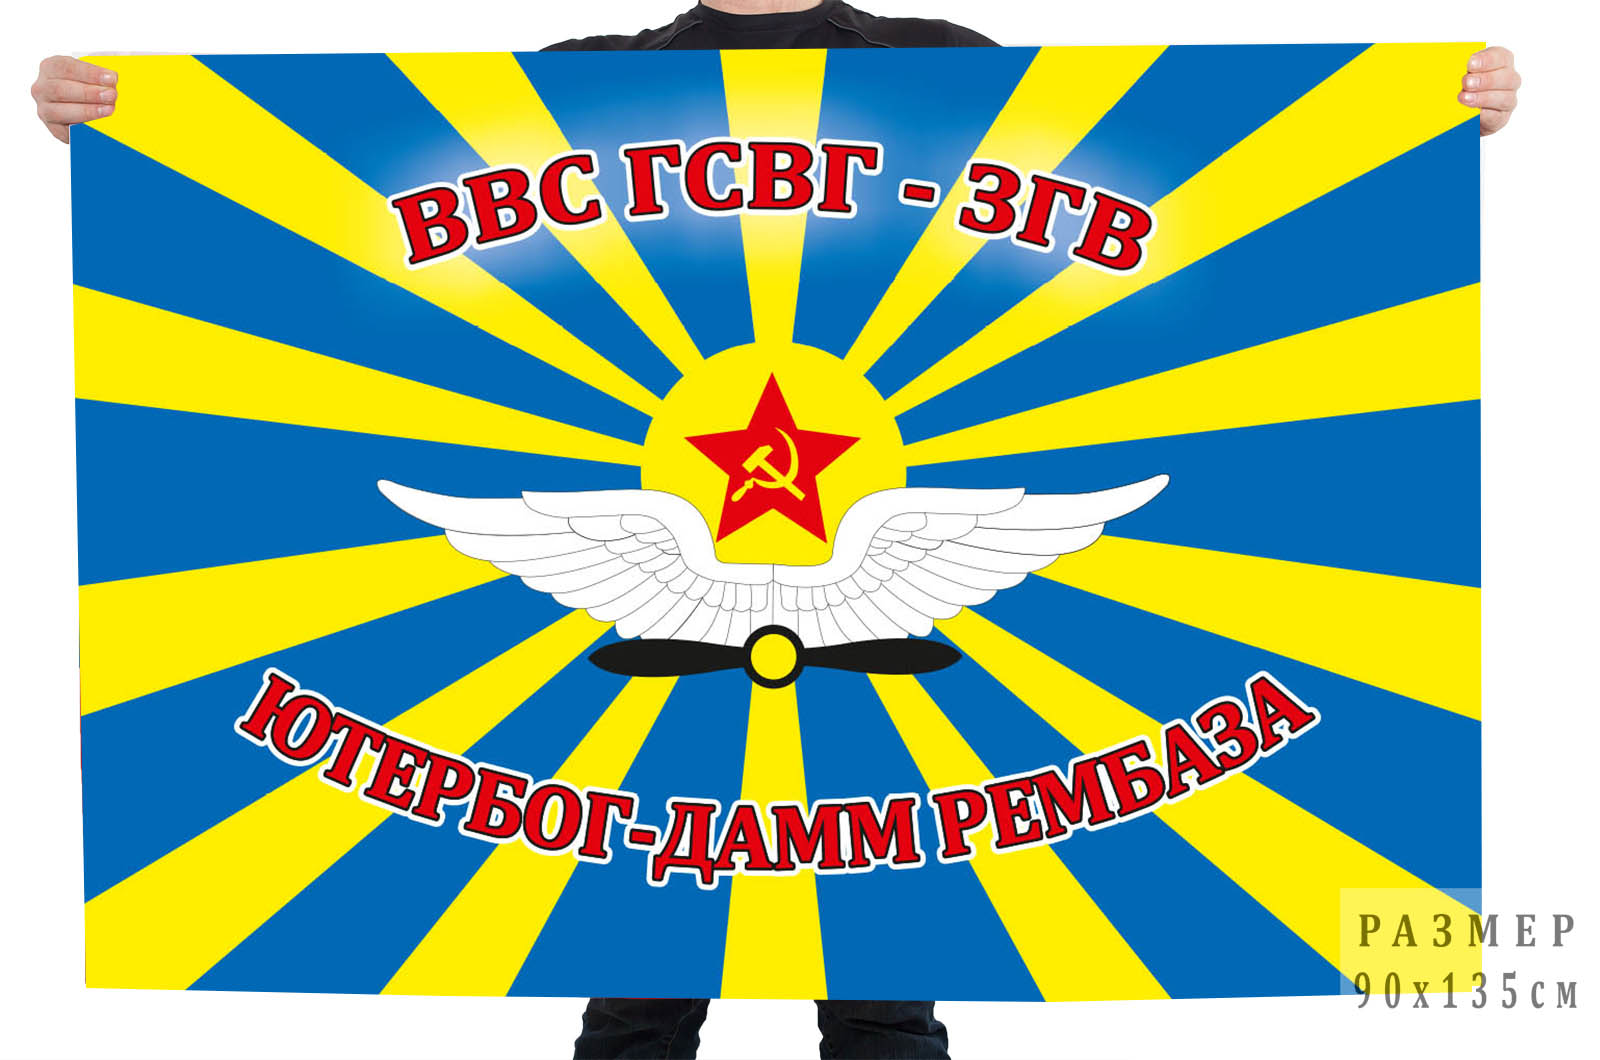 Купить в Москве флаг рембазы ВВС ГСВГ-ЗГВ, Ютербог-Дамм